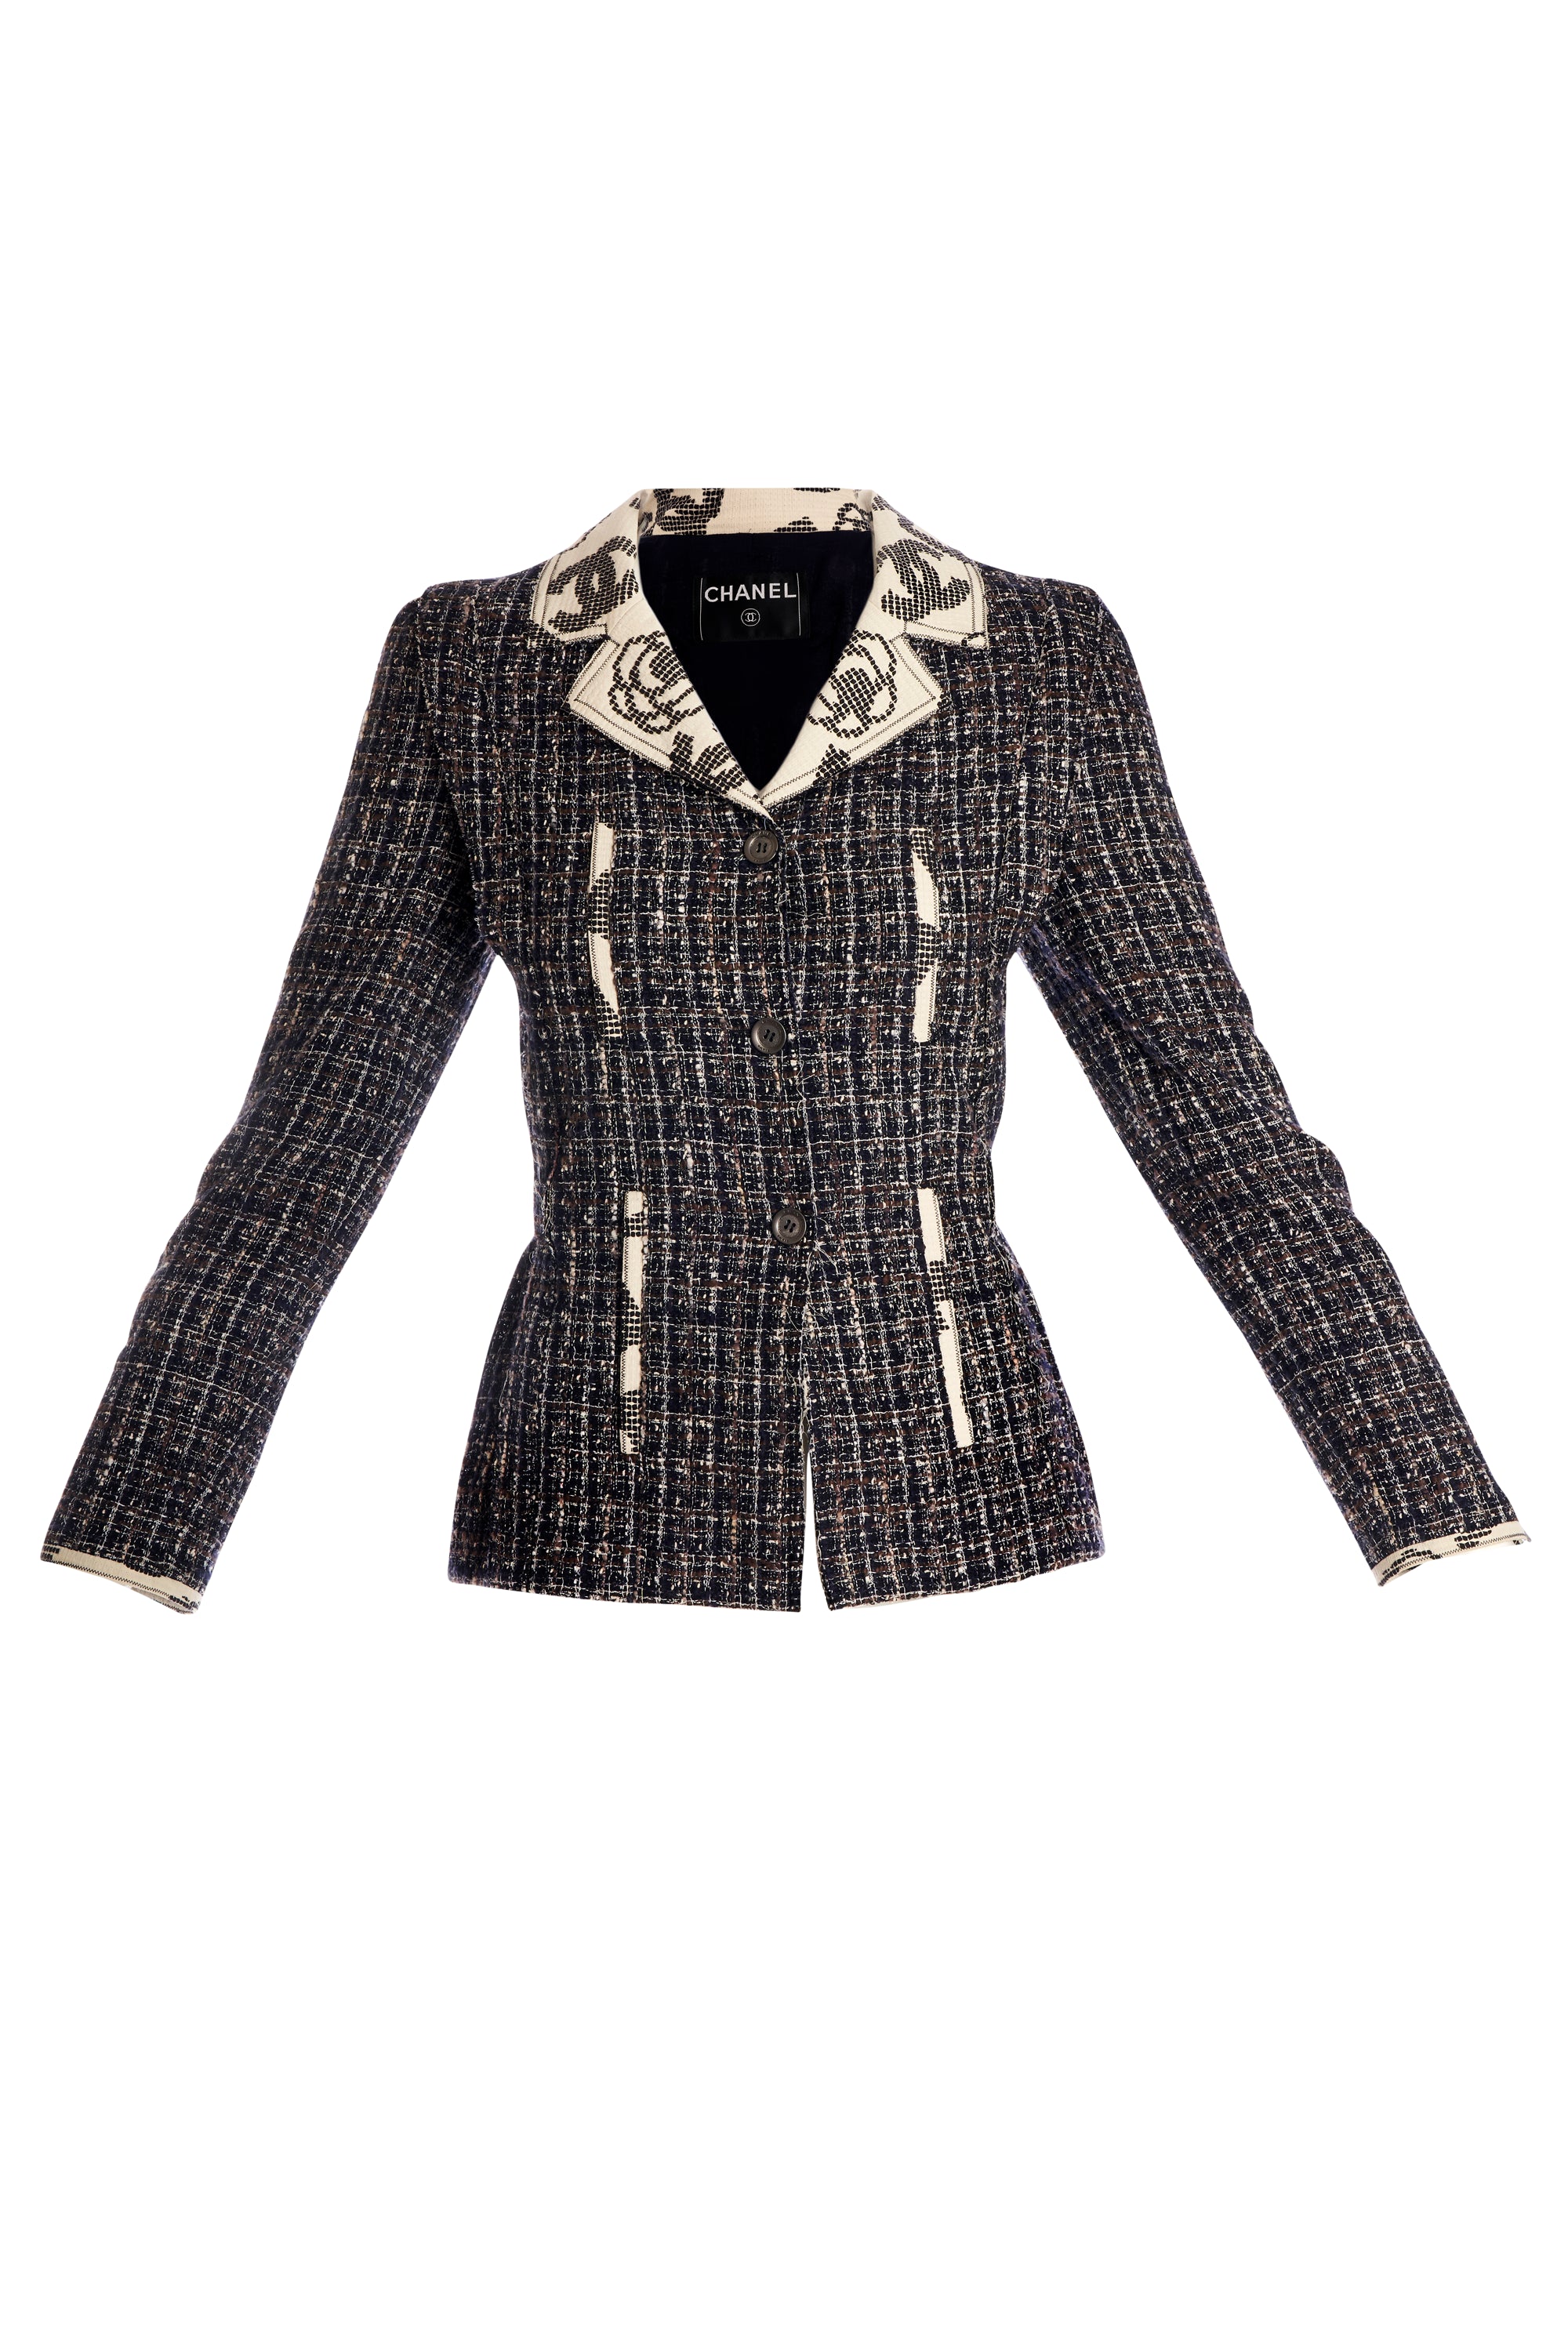 Chanel Grey Tweed Jacket 2006 Size 36